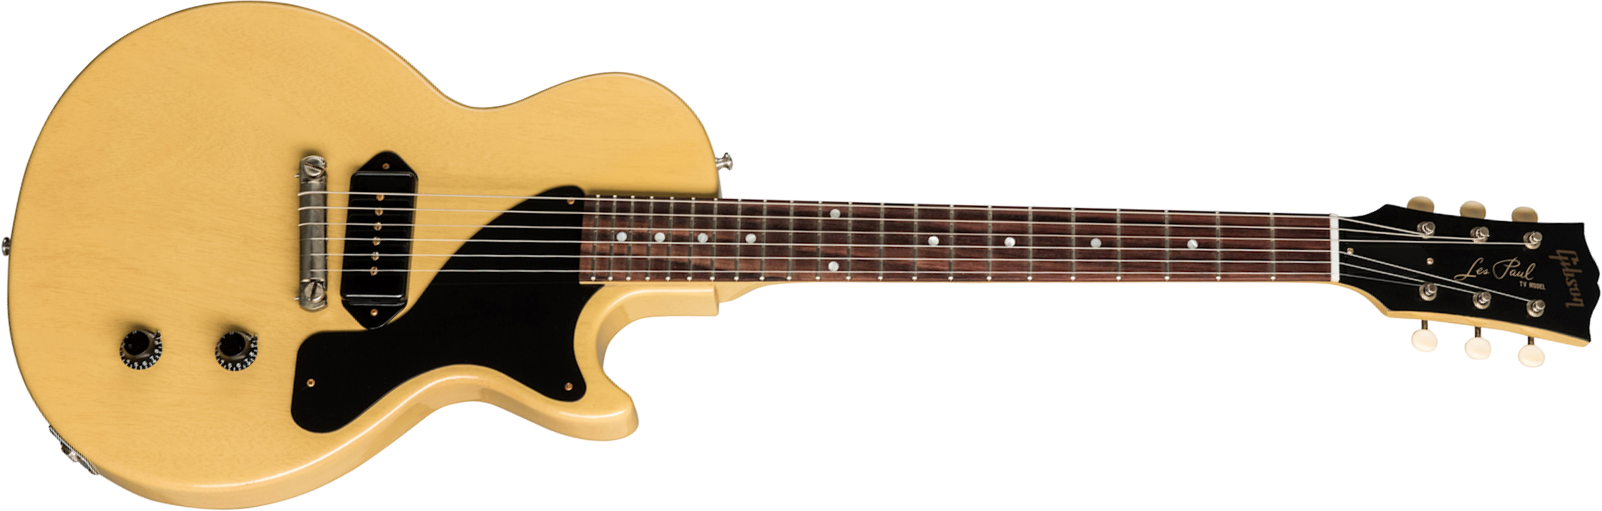 Gibson Custom Shop Les Paul Junior 1957 Single Cut Reissue P90 Ht Rw - Vos Tv Yellow - Guitare Électrique Single Cut - Main picture